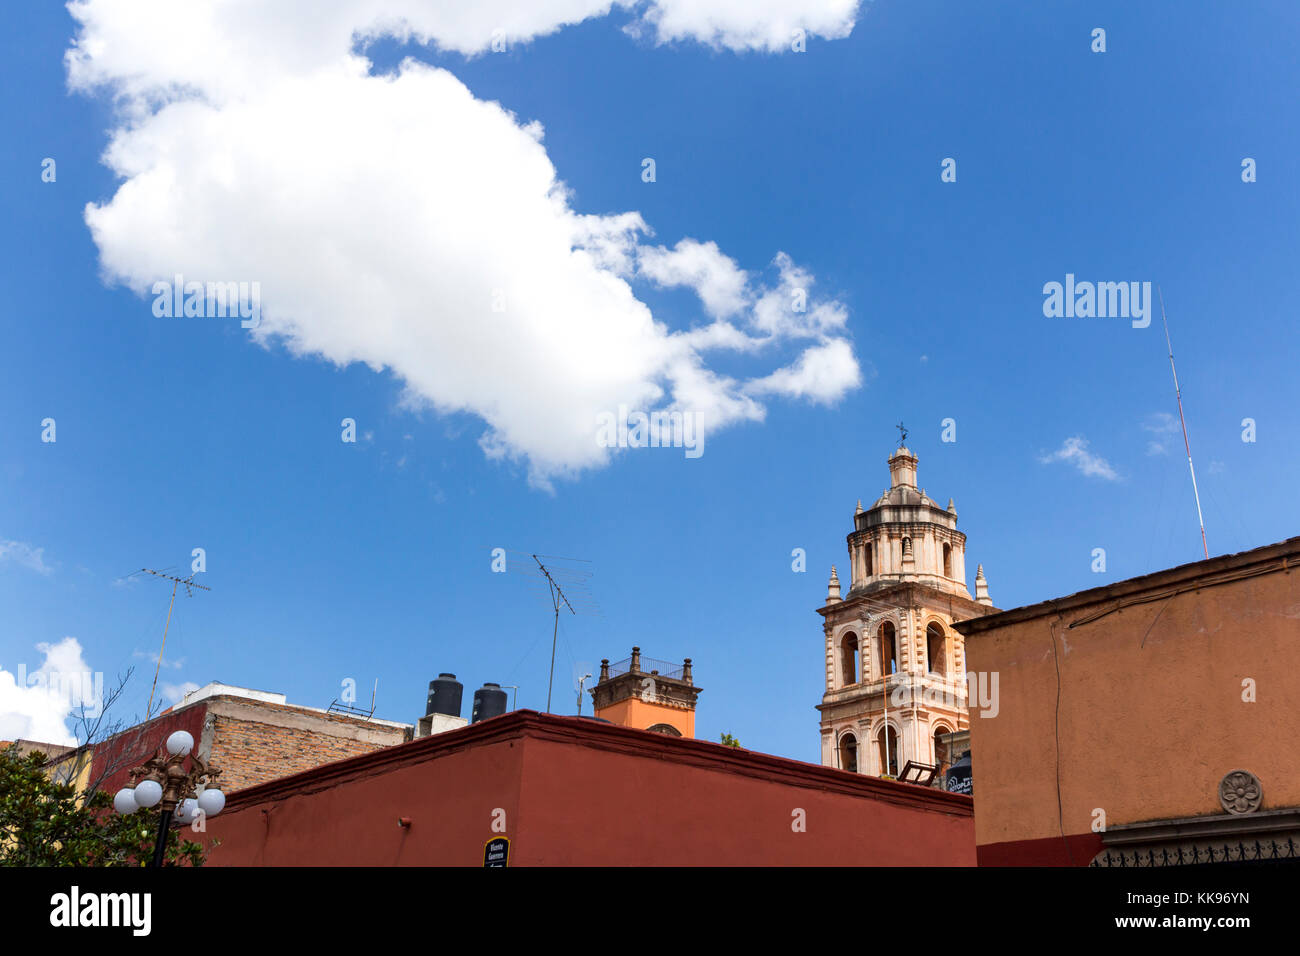 The downtown in a summer day. San Luis Potosí, San Luis Potosí. Mexico Stock Photo